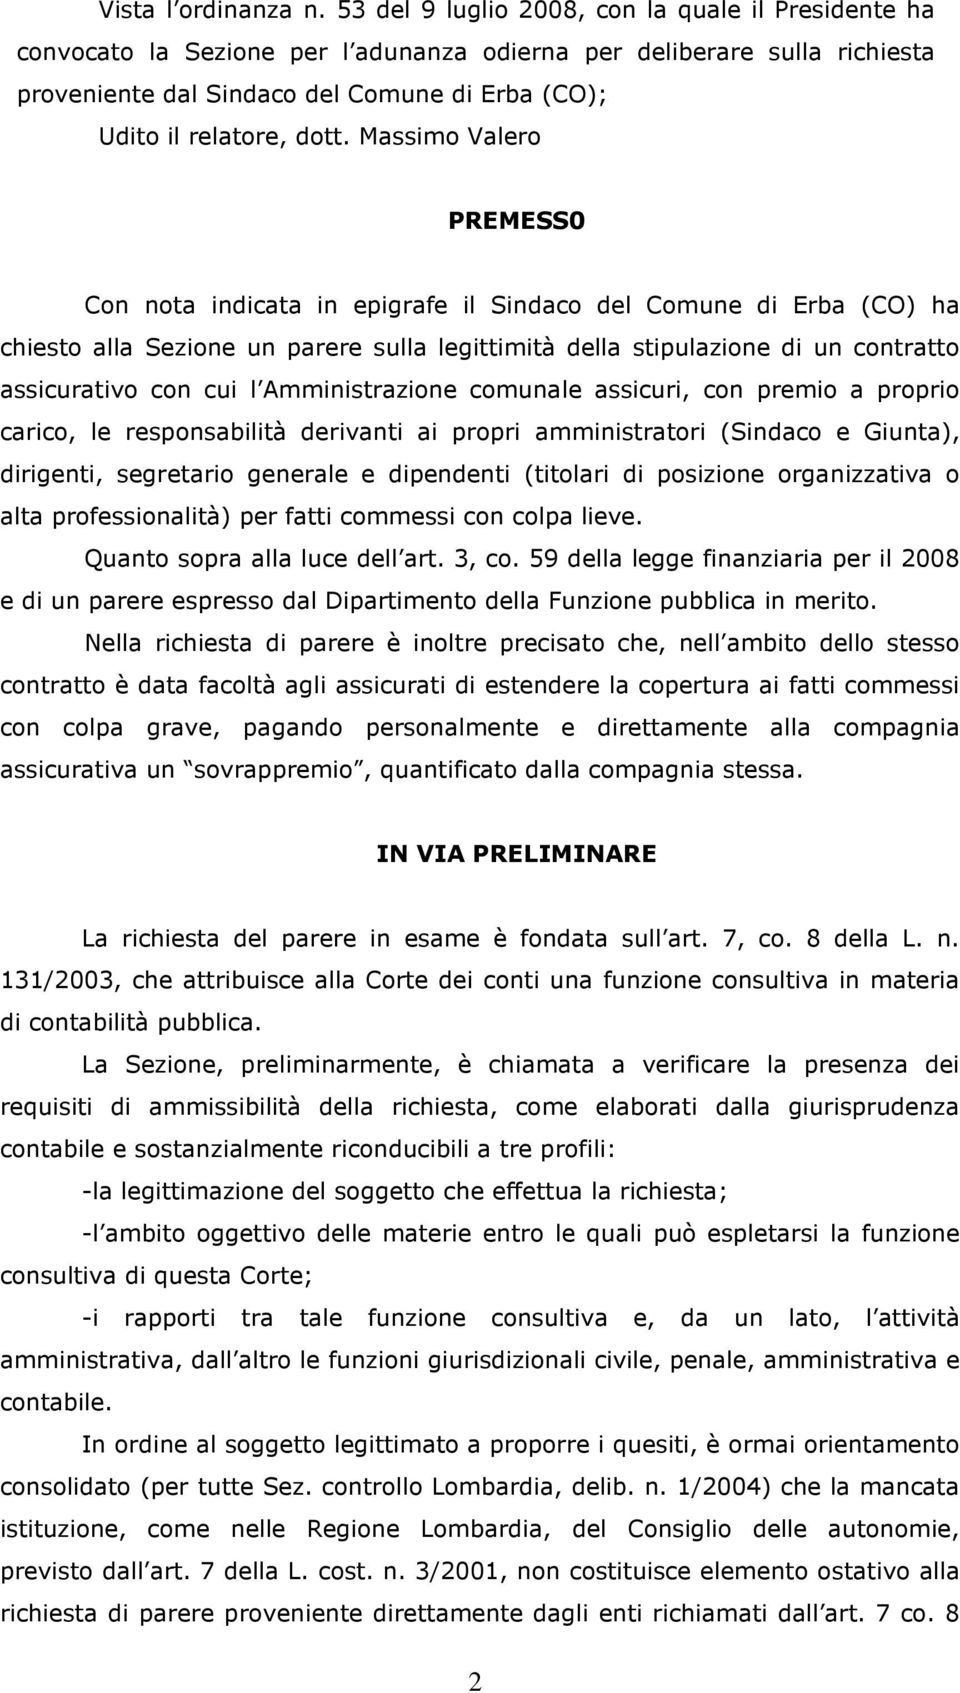 Massimo Valero PREMESS0 Con nota indicata in epigrafe il Sindaco del Comune di Erba (CO) ha chiesto alla Sezione un parere sulla legittimità della stipulazione di un contratto assicurativo con cui l